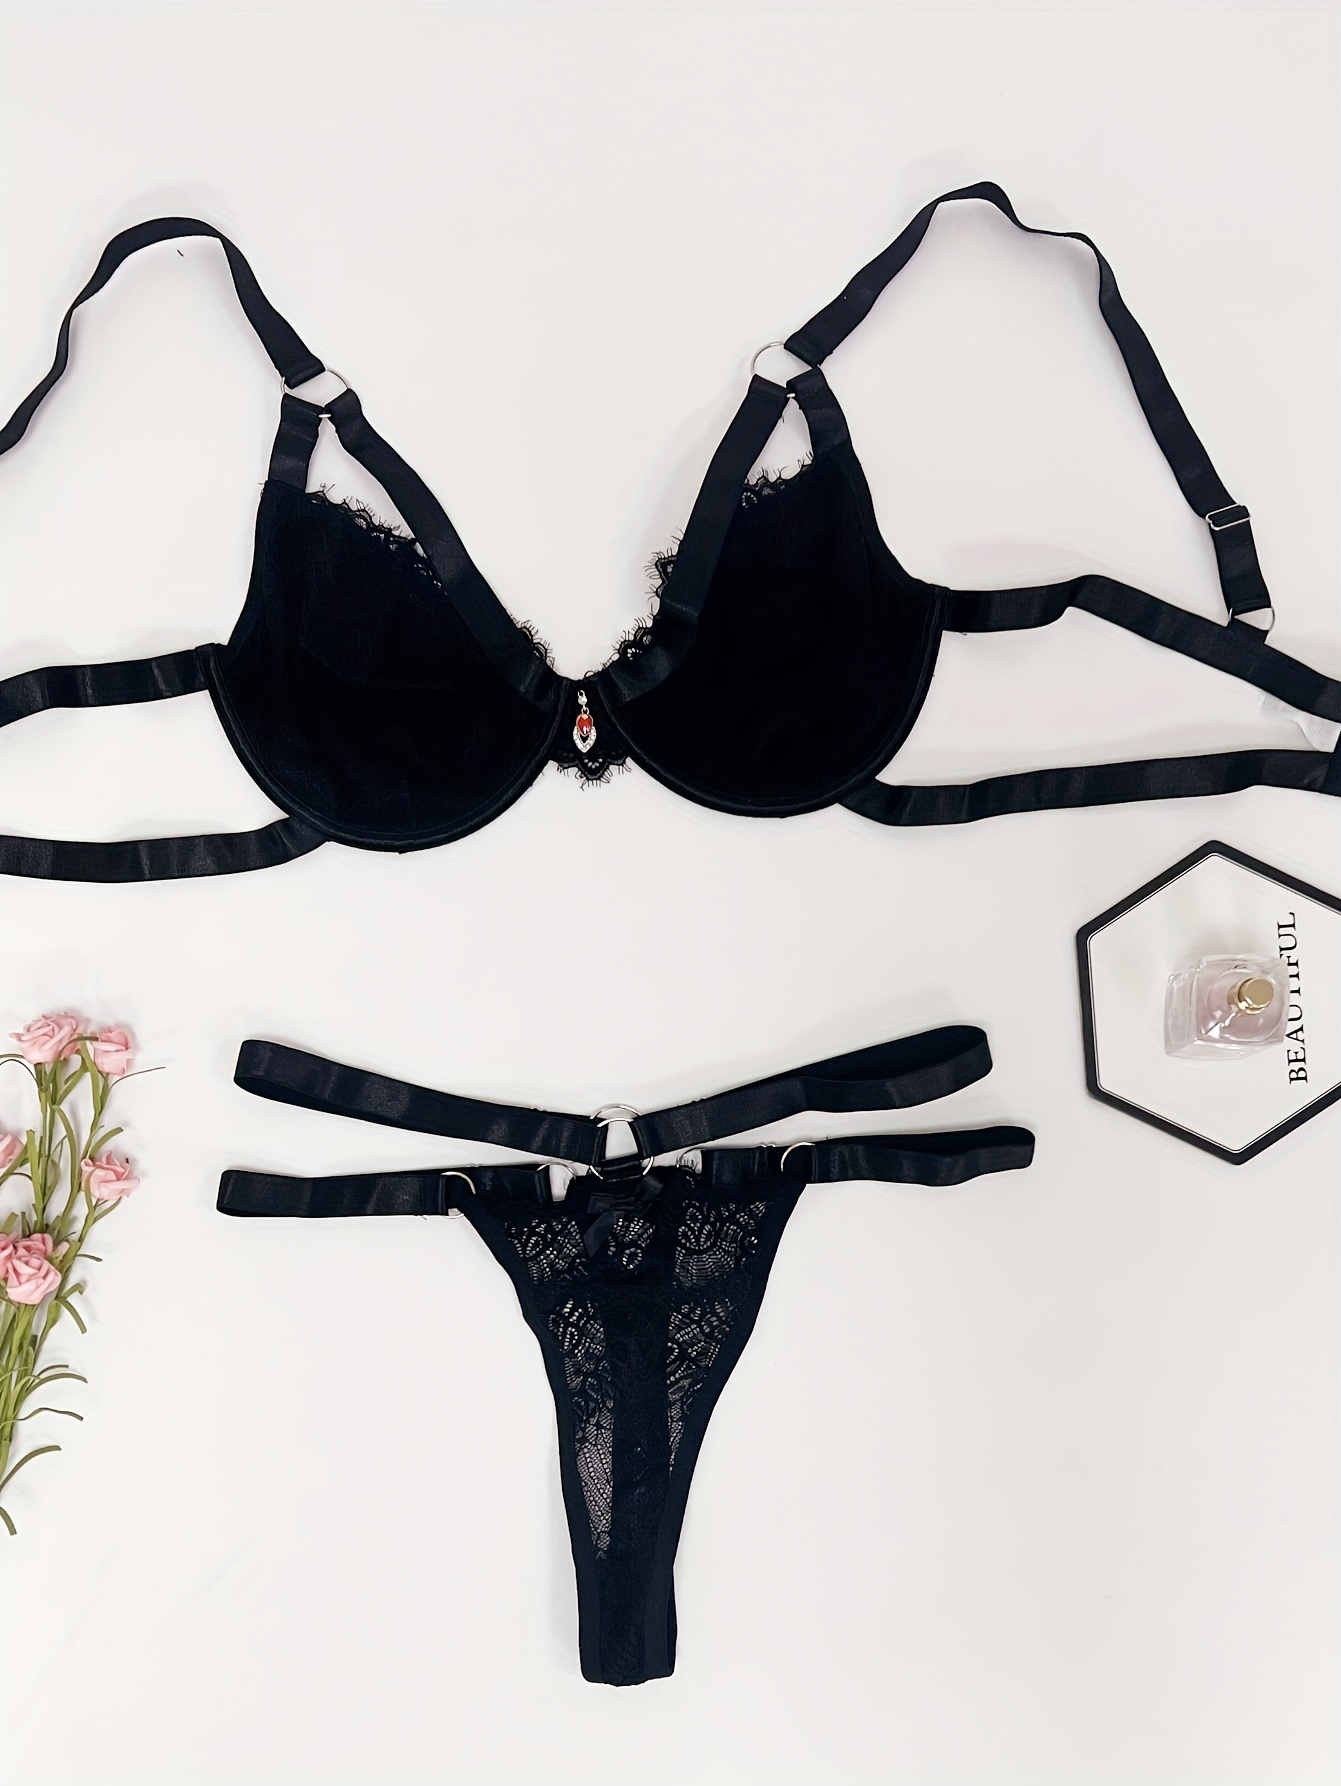 Women's Sexy Lingerie Set, Plus Size Contrast Lace Full Cover Bow Front Bra  & Panty Lingerie 2 Piece Set